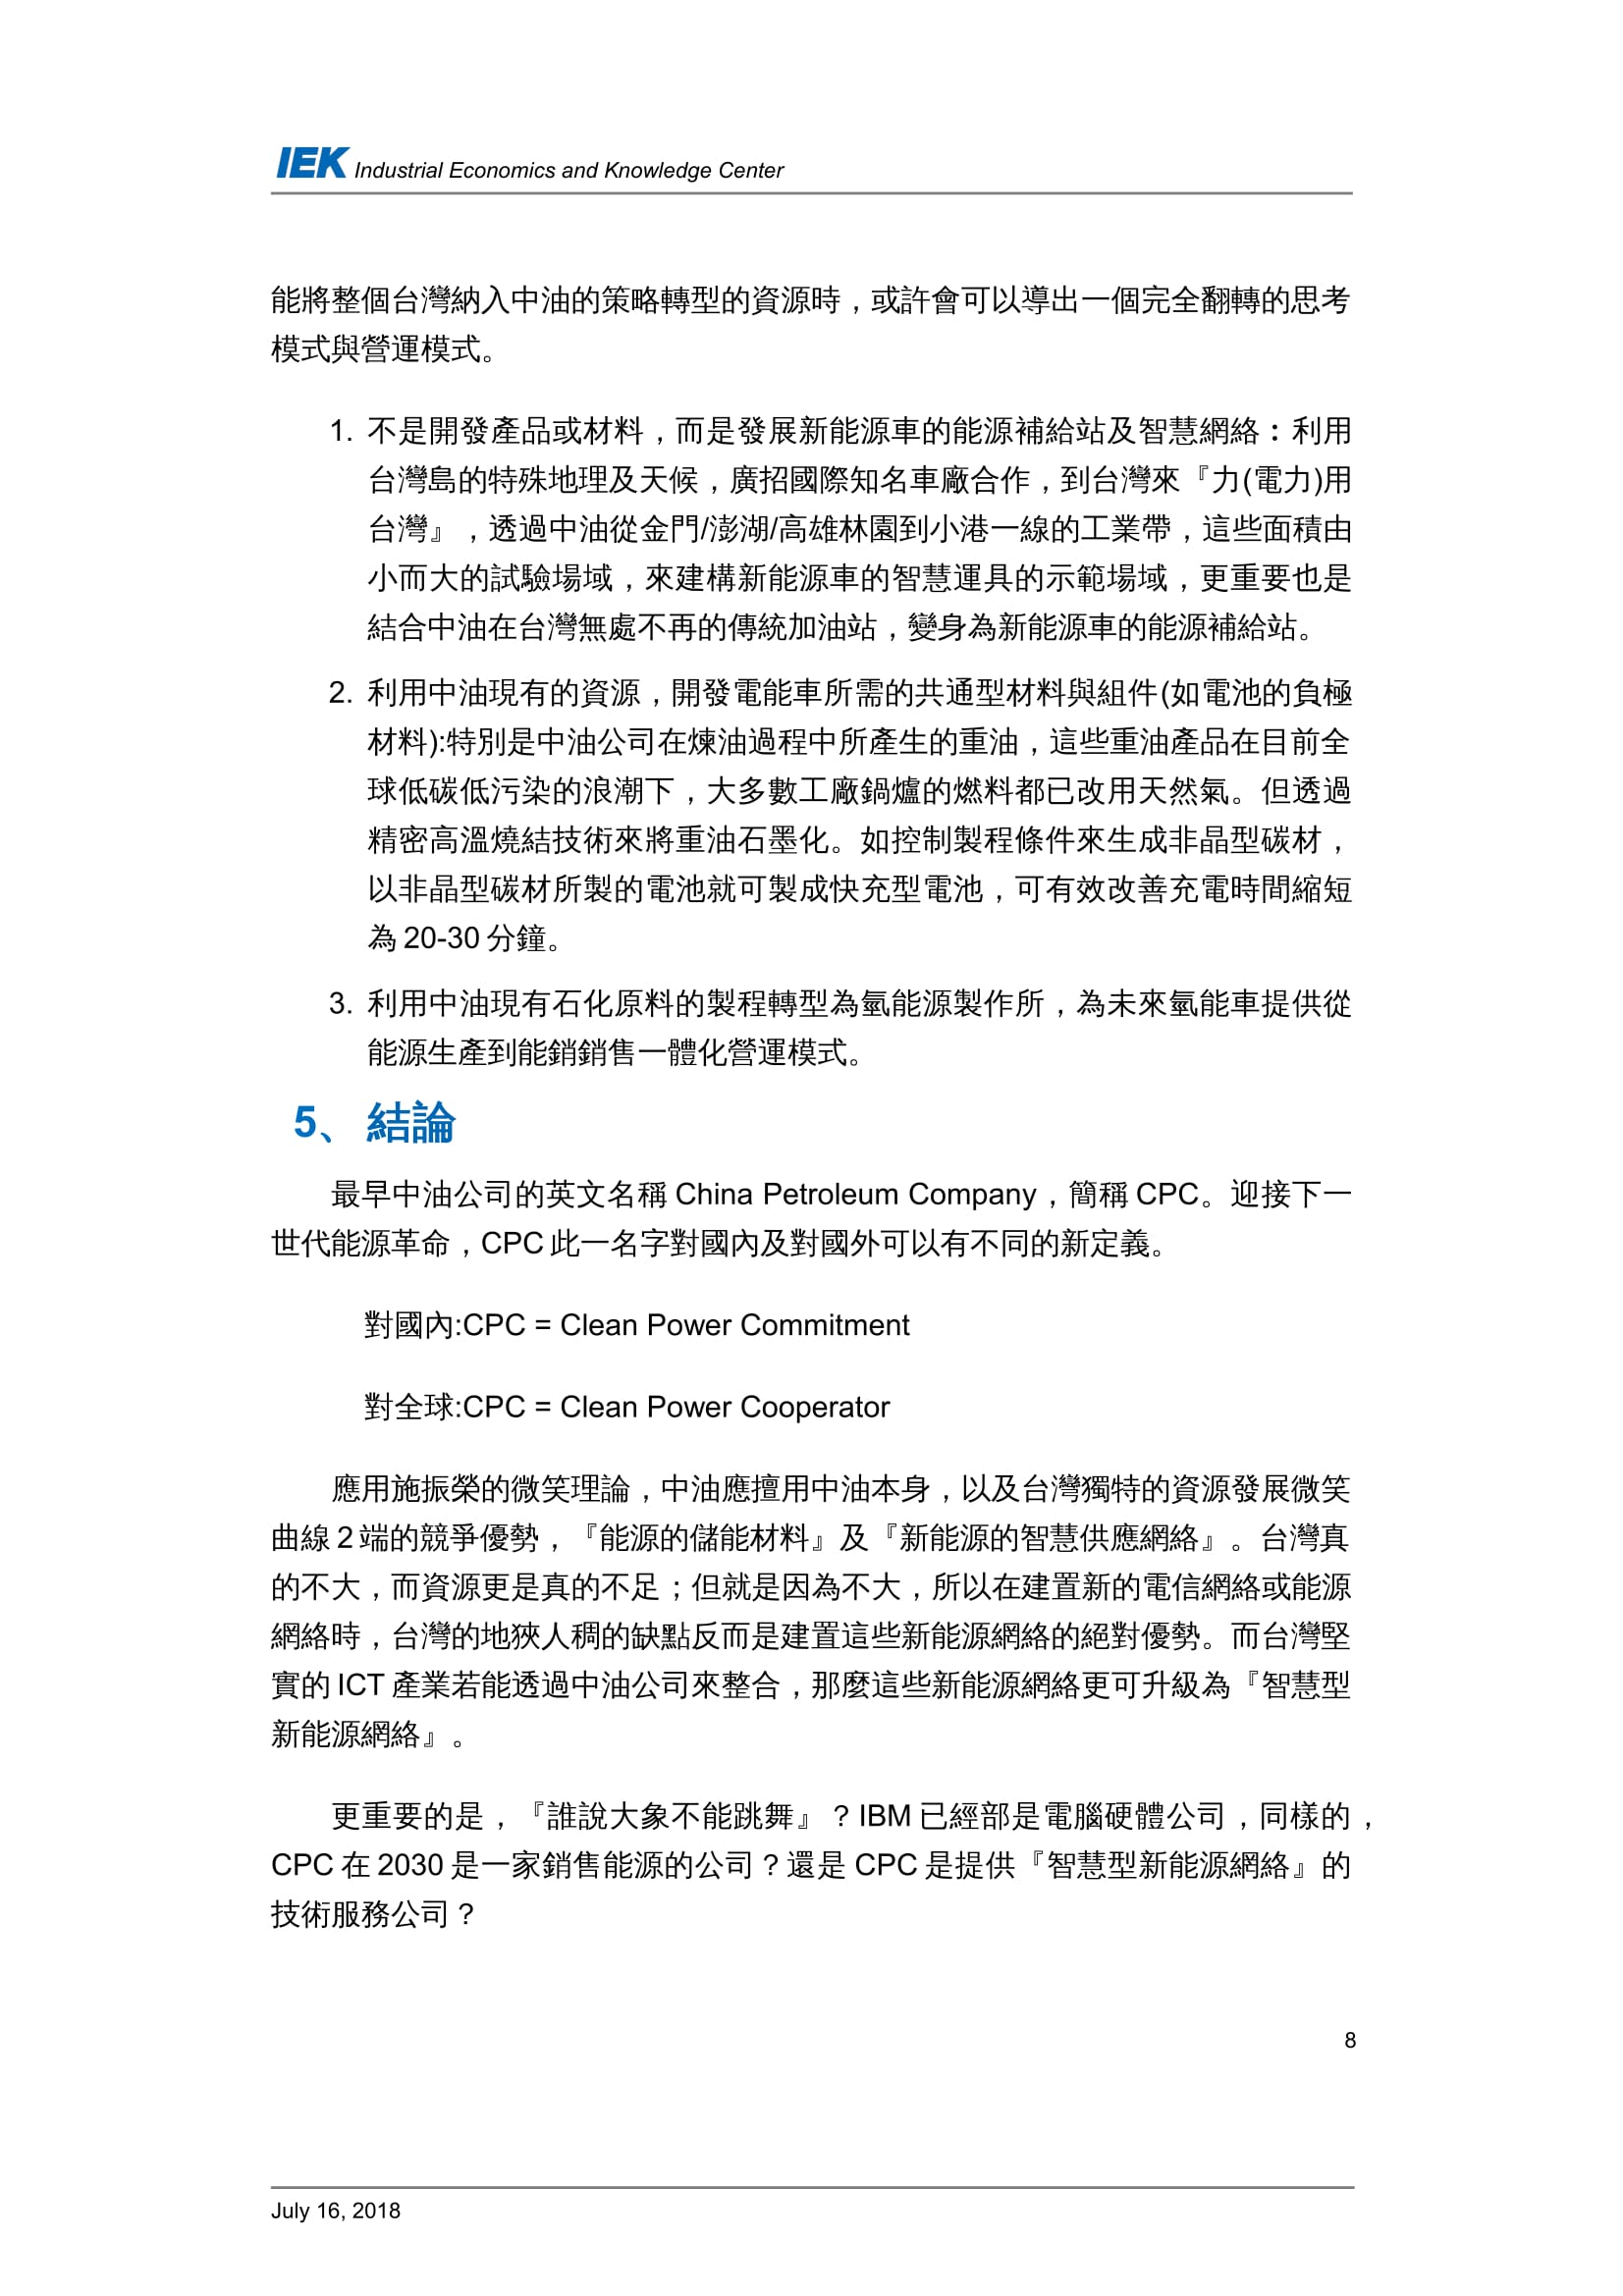 從國外石油產業的轉型看台灣中油的轉型策略_共11頁_第10頁內文(詳如下方附件)